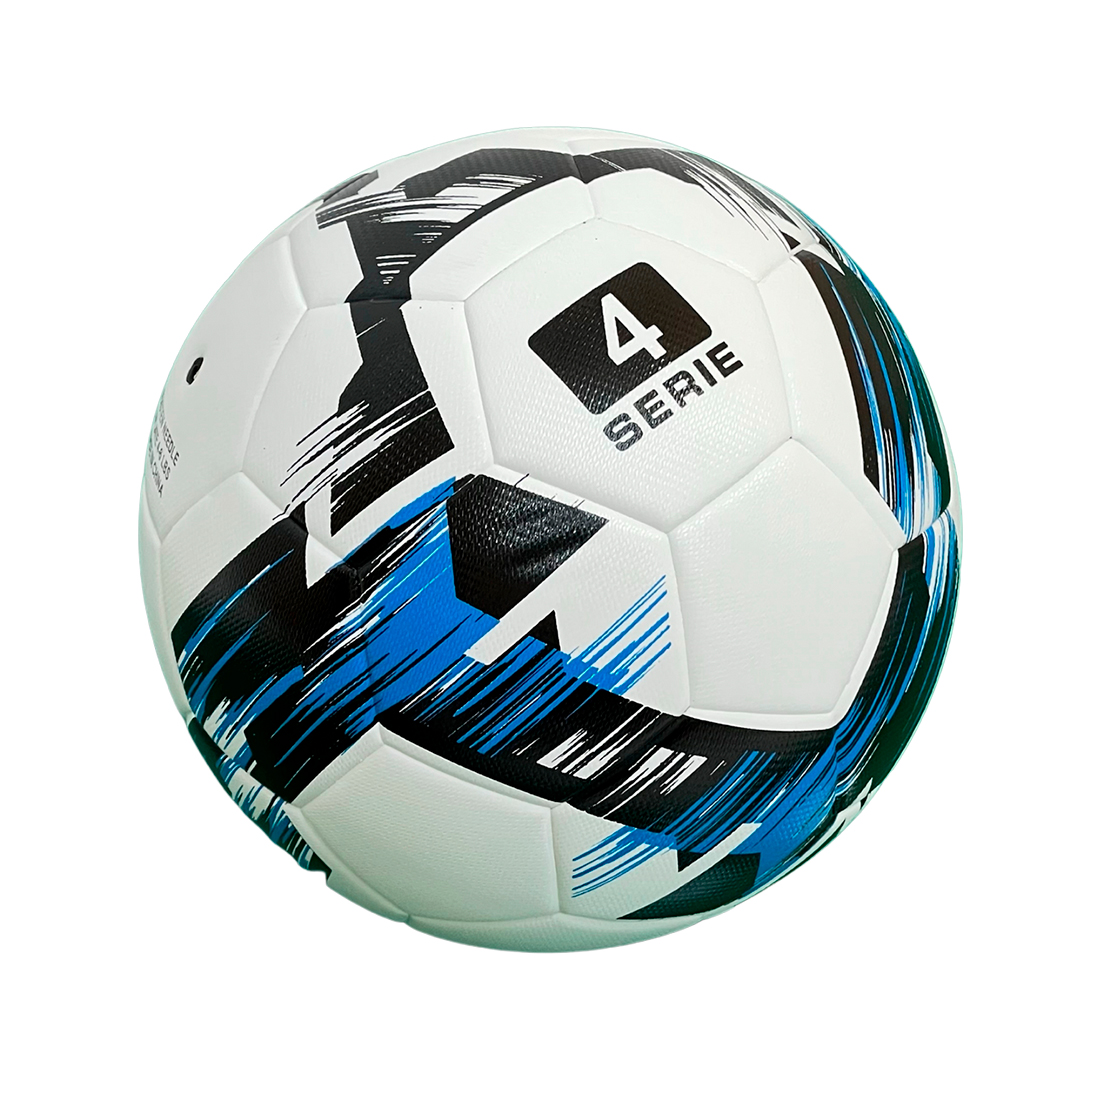 М'яч футбольний Europaw Proball2202 4 синій-чорний